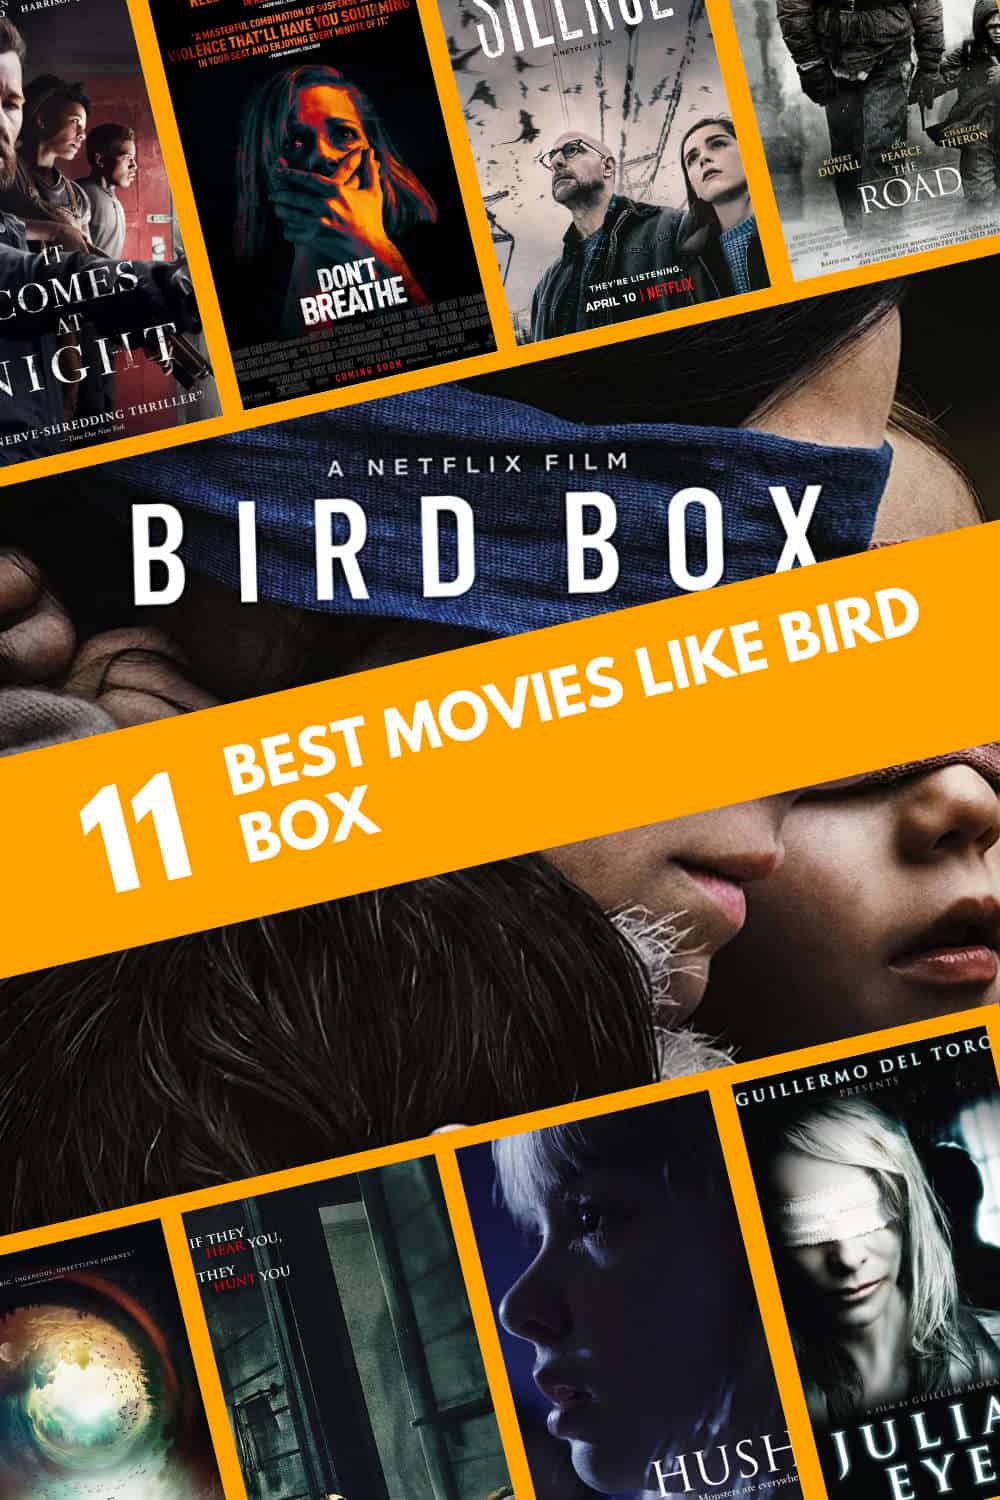 Movie Like Bird Box